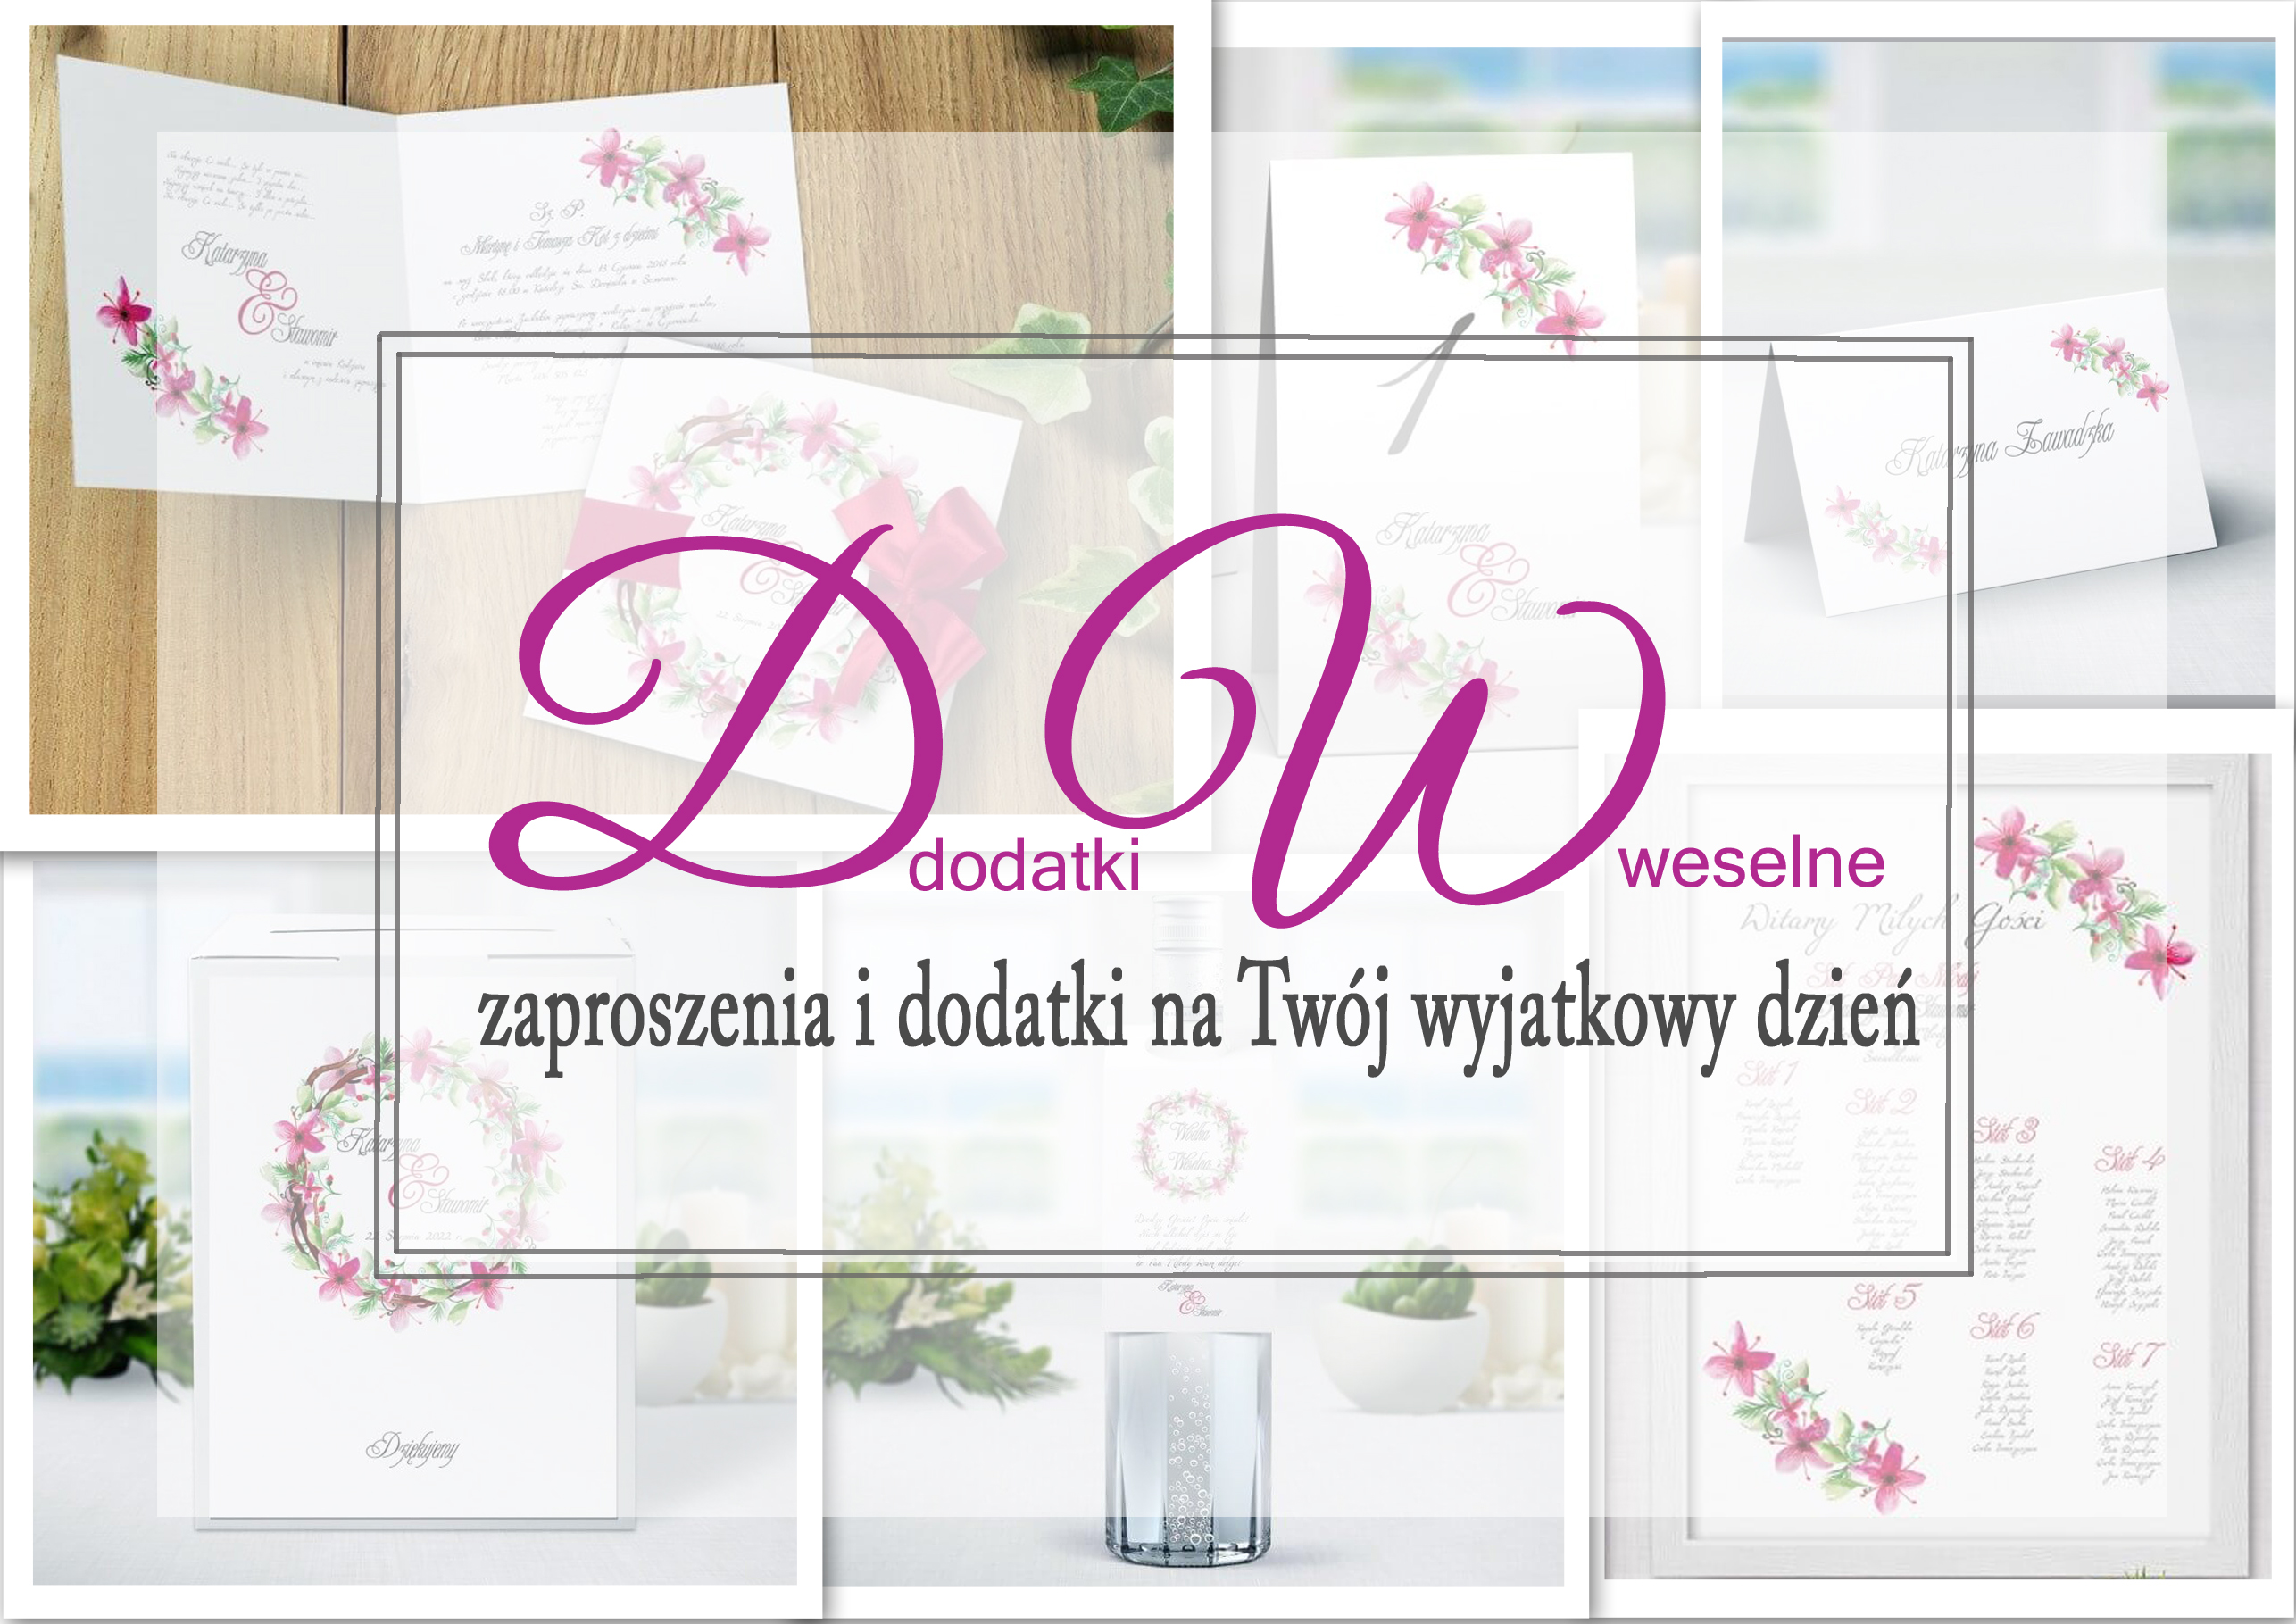 Planujesz ślub? Znajdź inspirację w sklepie DodatkiWeselne.pl!